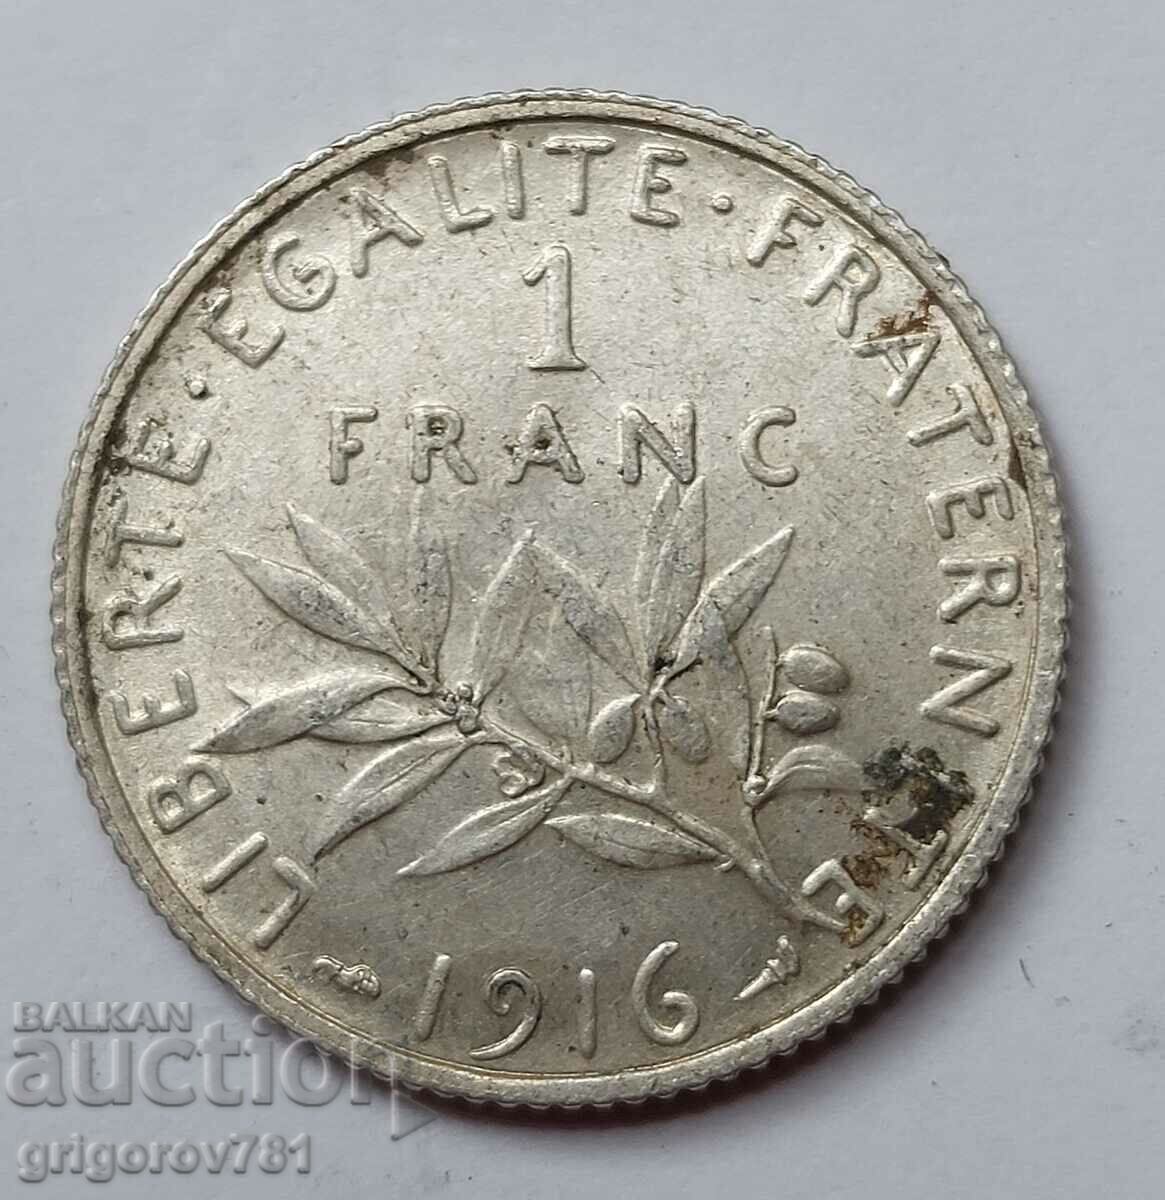 Ασημένιο 1 φράγκου Γαλλία 1916 - ασημένιο νόμισμα №13